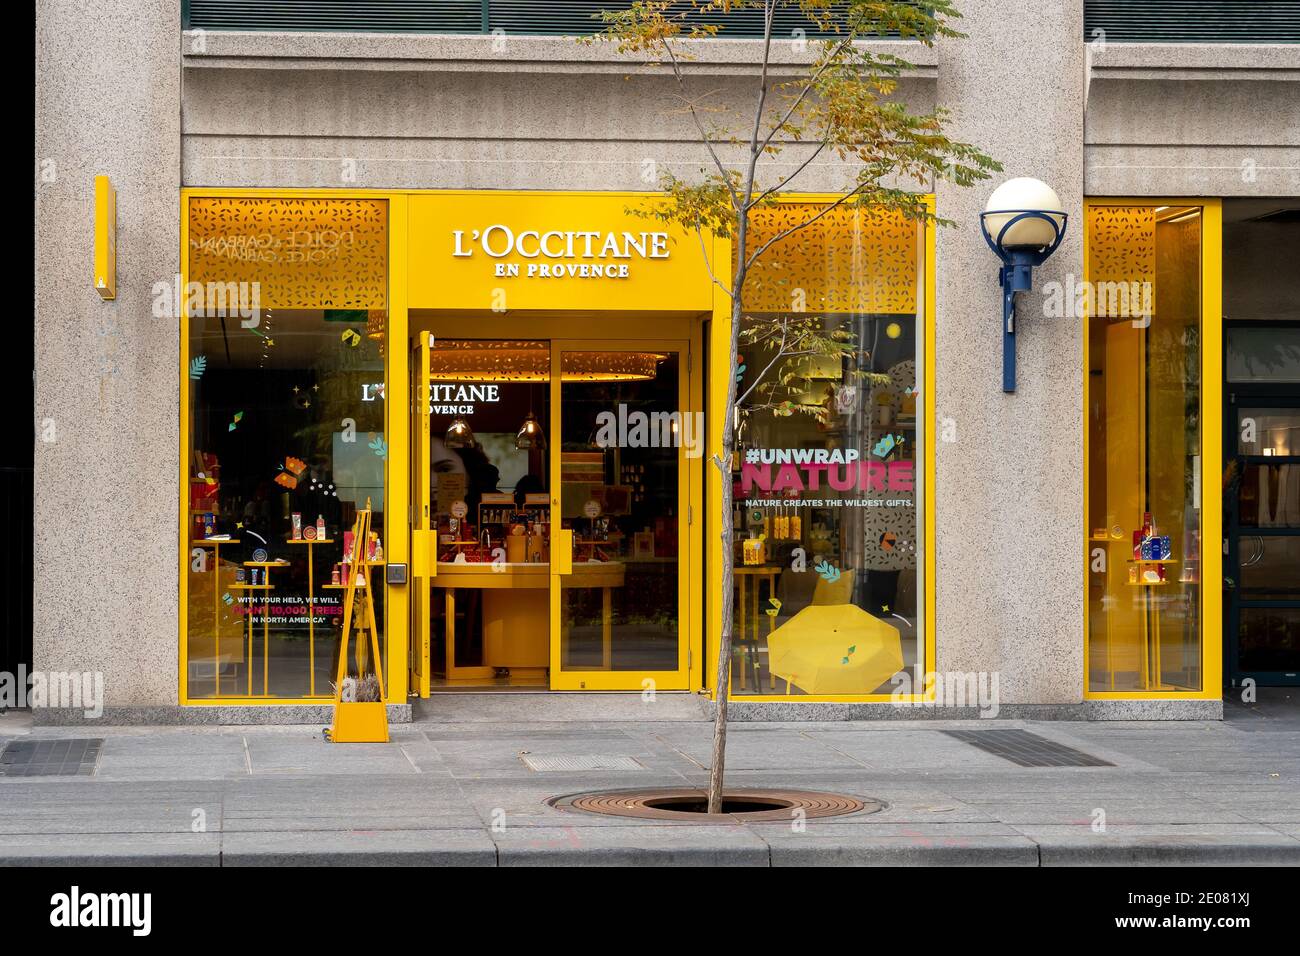 Toronto, Canada - October 24, 2019: The L'occitane store in Toronto, Canada. Stock Photo